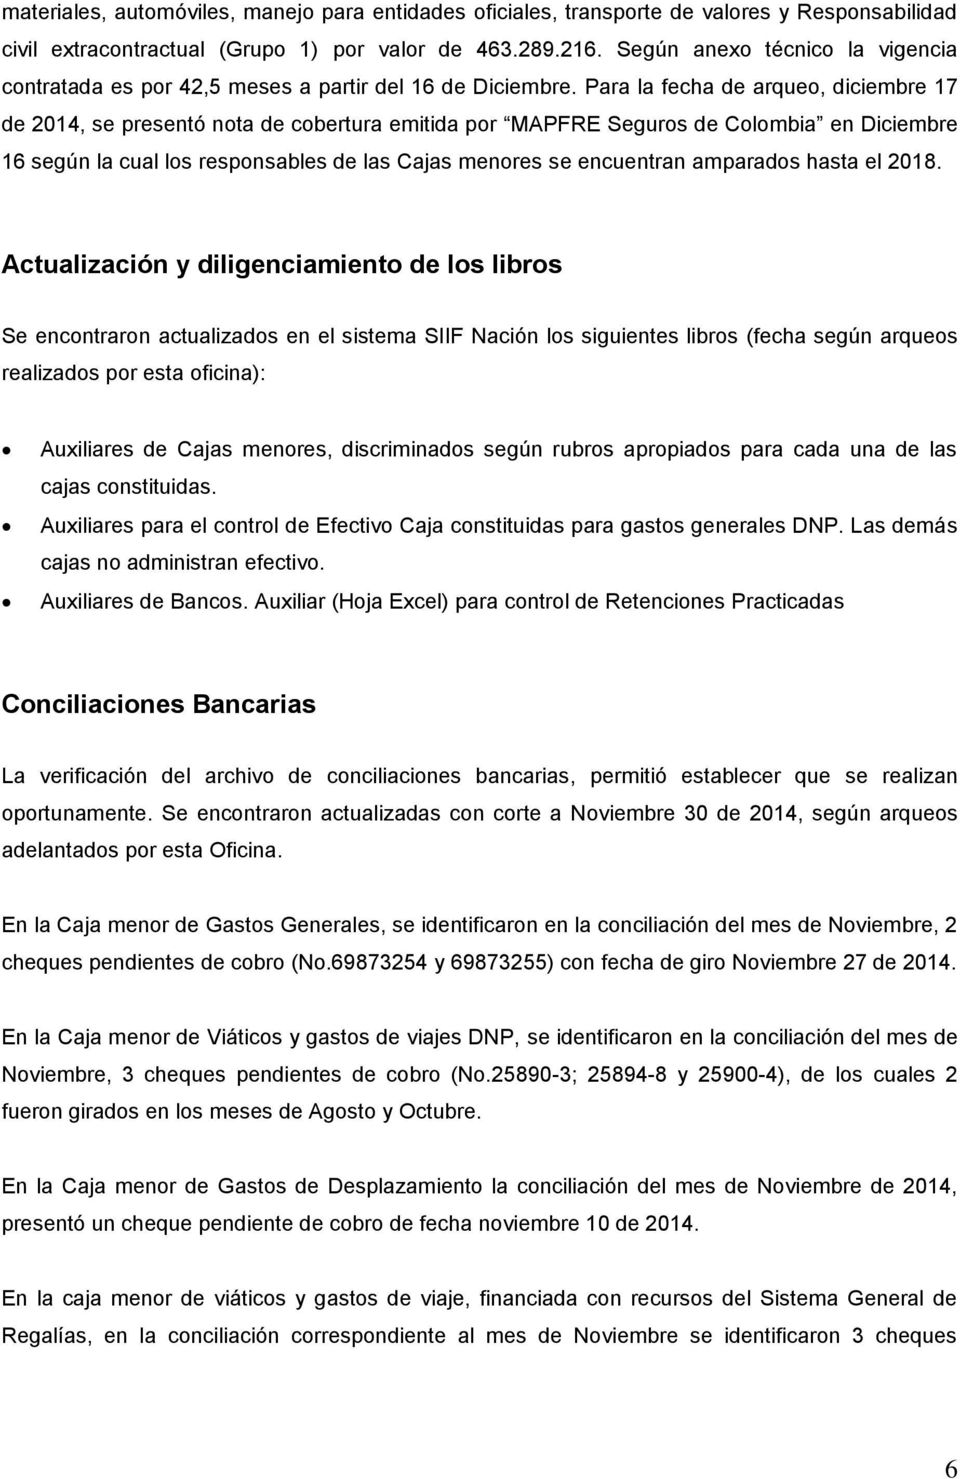 Para la fecha de arqueo, diciembre 17 de 2014, se presentó nota de cobertura emitida por MAPFRE Seguros de Colombia en Diciembre 16 según la cual los responsables de las Cajas menores se encuentran